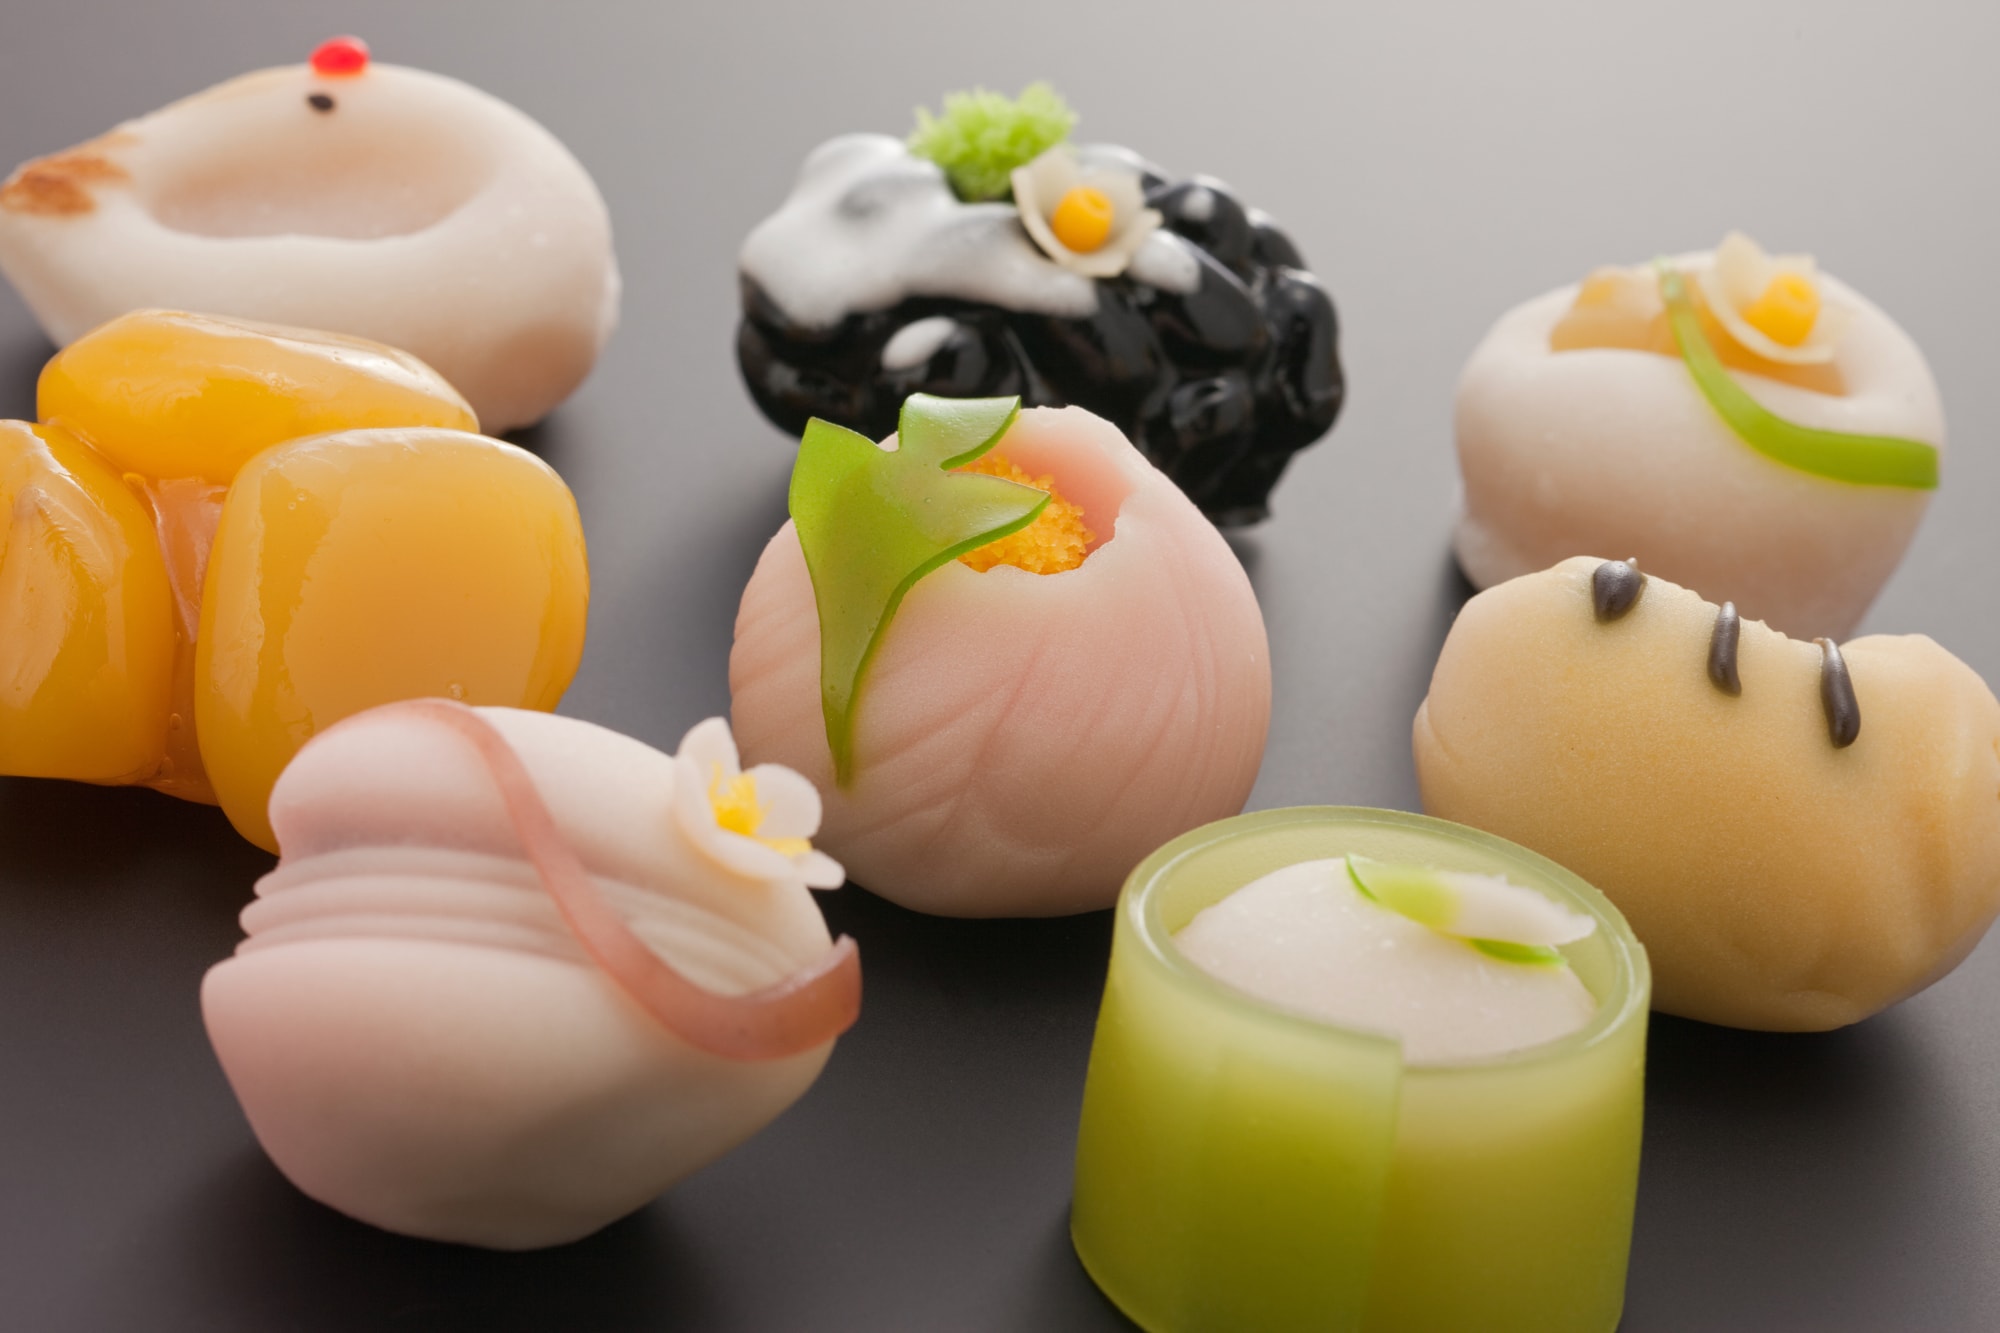 京都で和菓子を自分で作ろう 手作り体験できるおすすめ名店5選 Pokke ポッケ